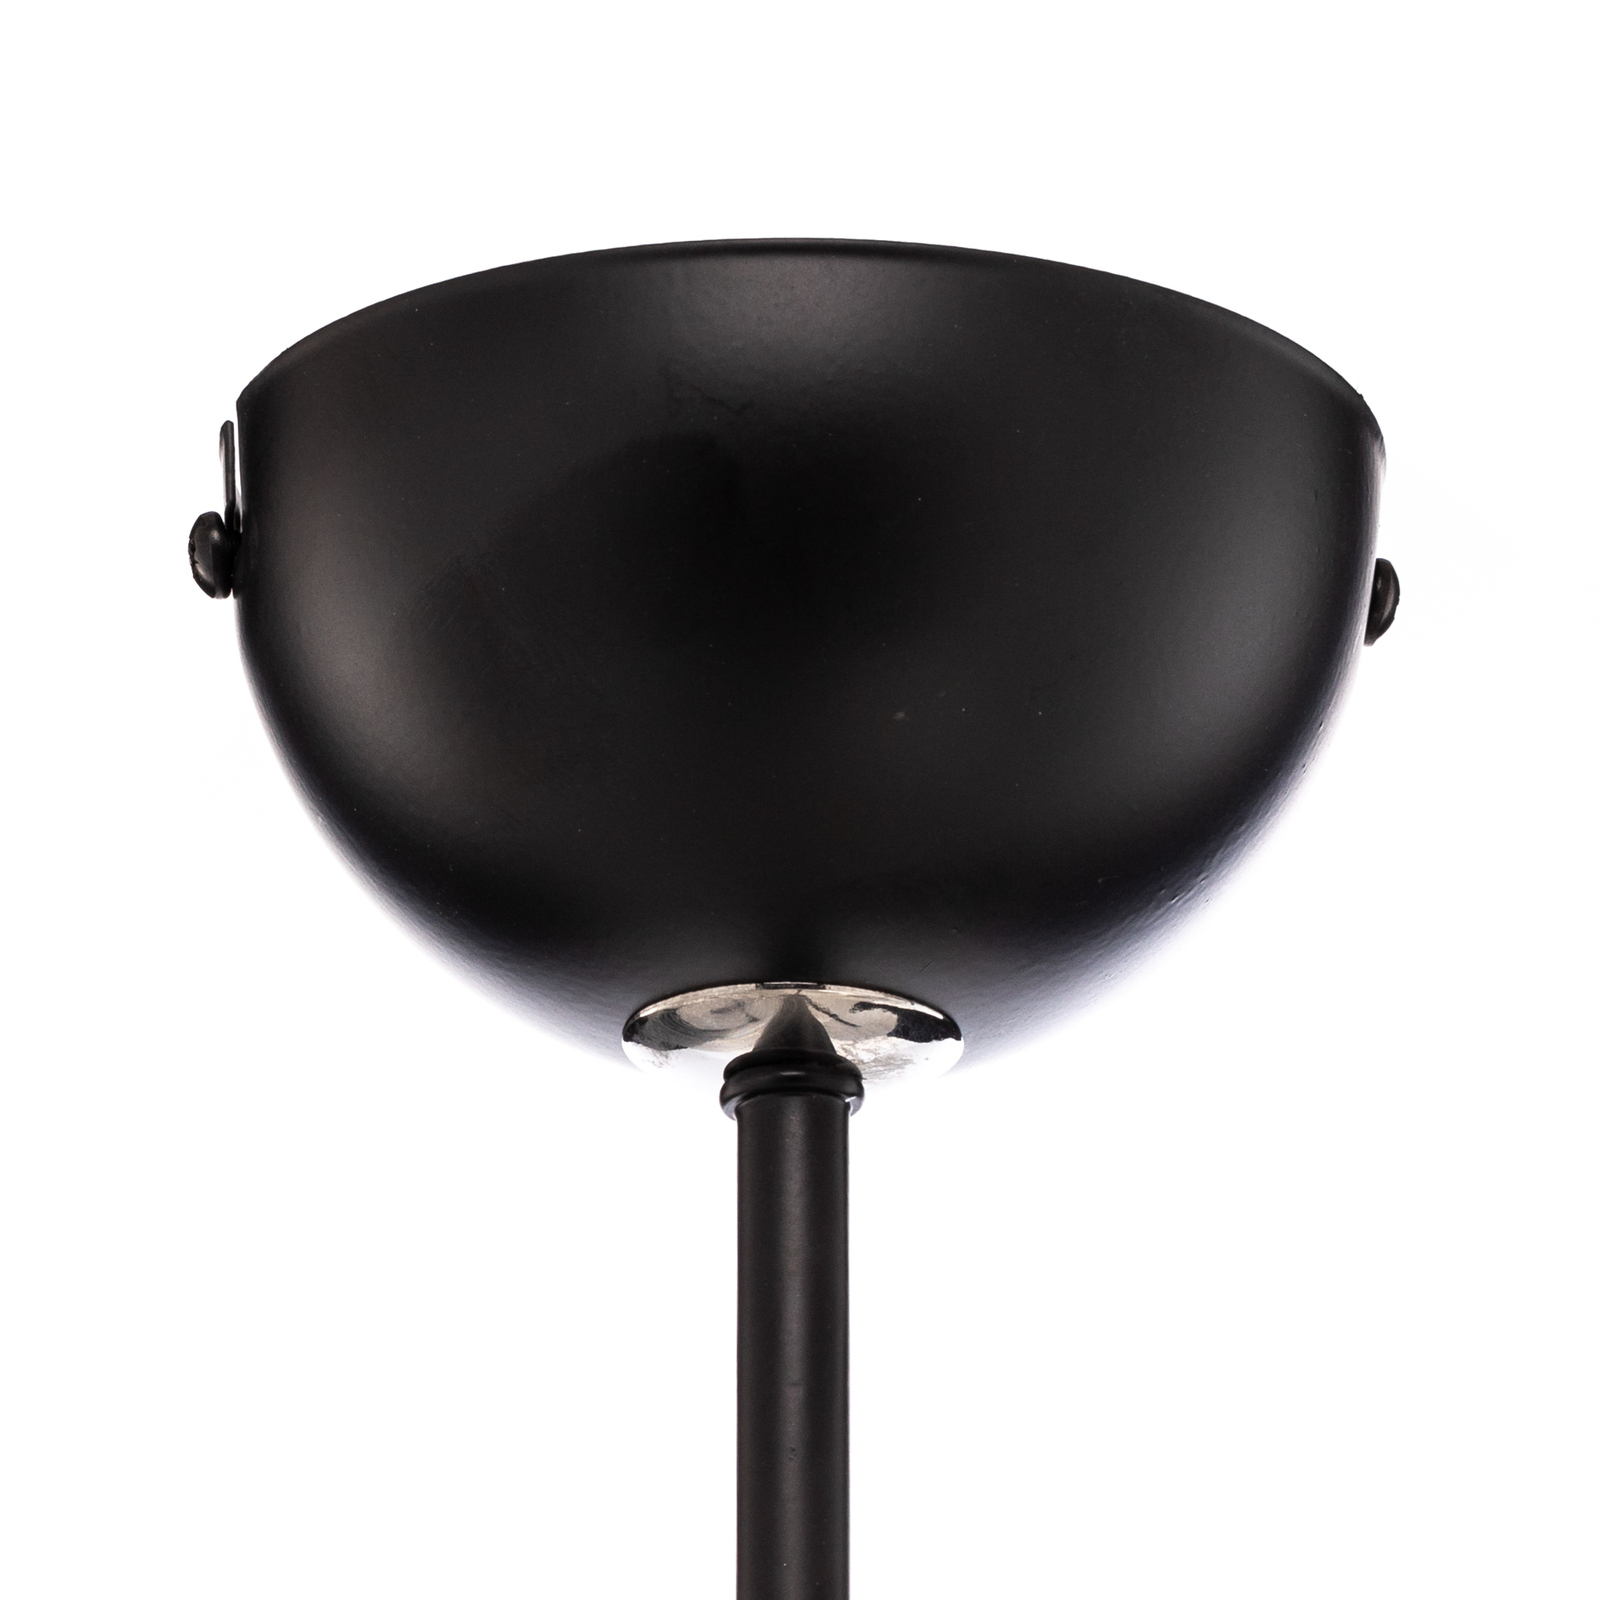 Avista pendant light in black, white glass globes